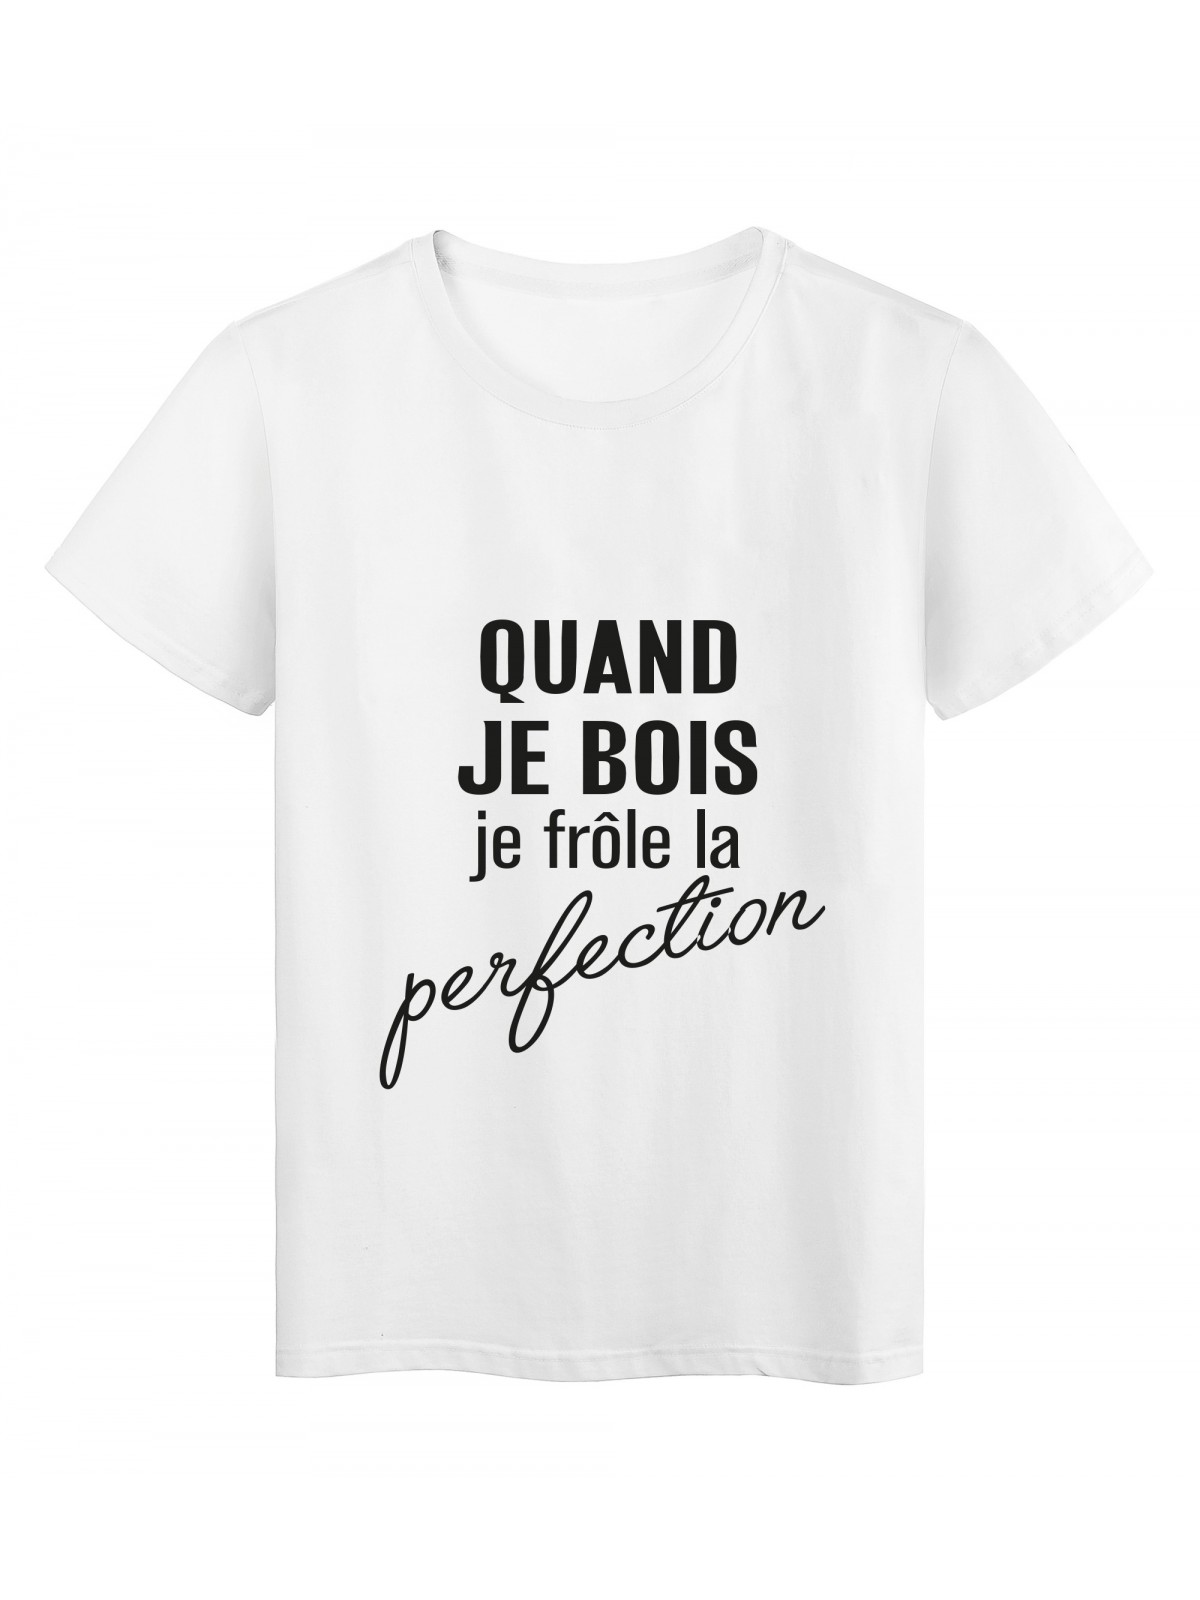 T-Shirt imprimÃ© citation humour quand je frole la perfection